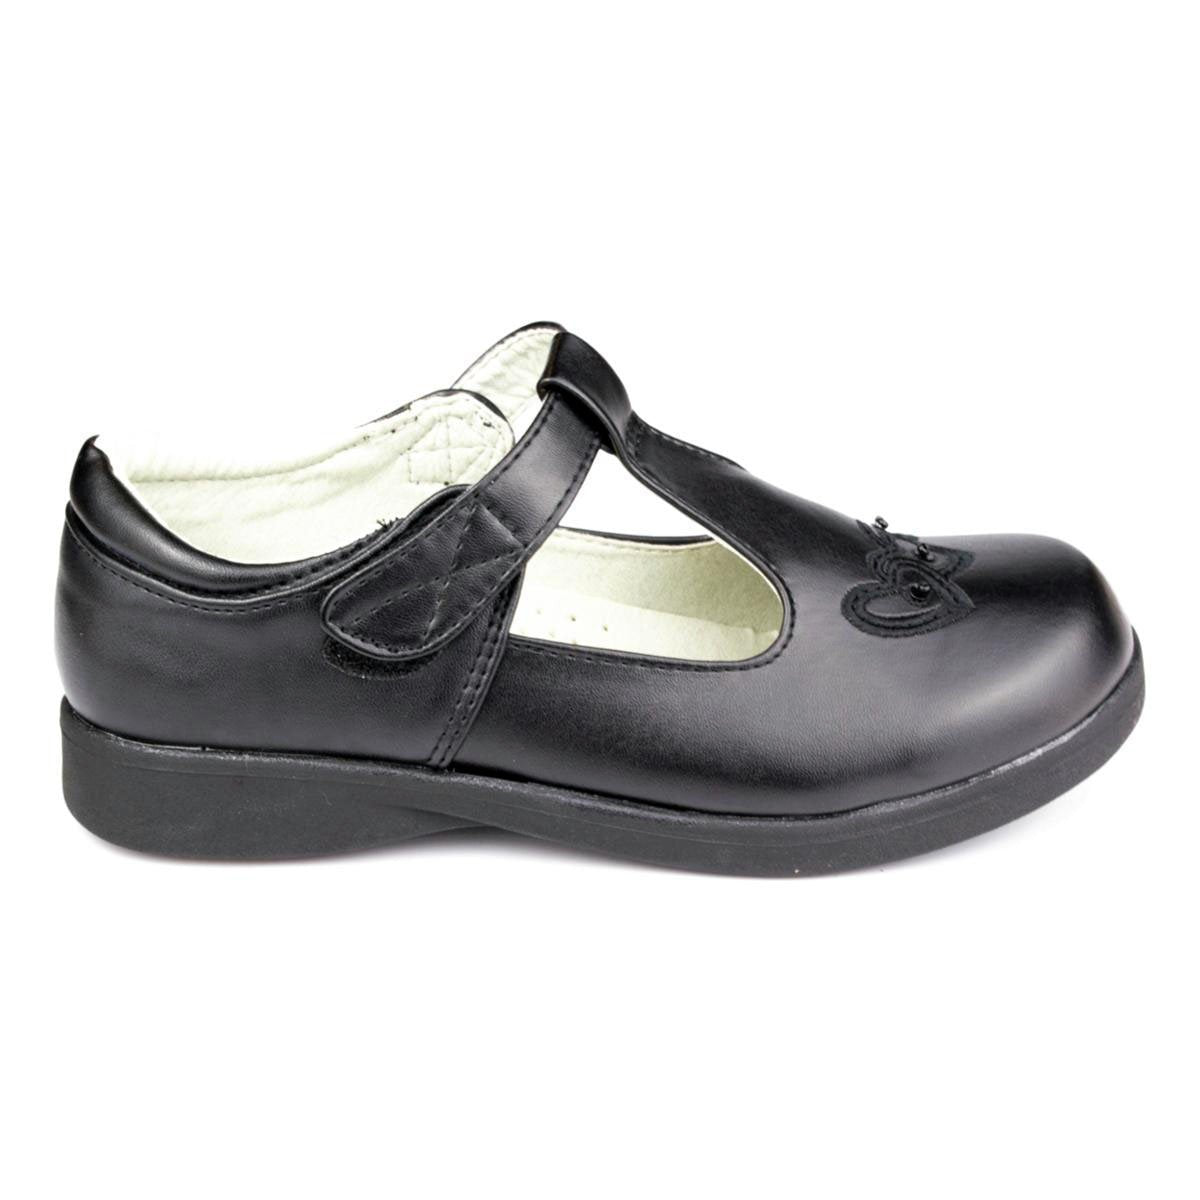 Girls Black T-Bar Shoe Fasten - Watney Shoes 